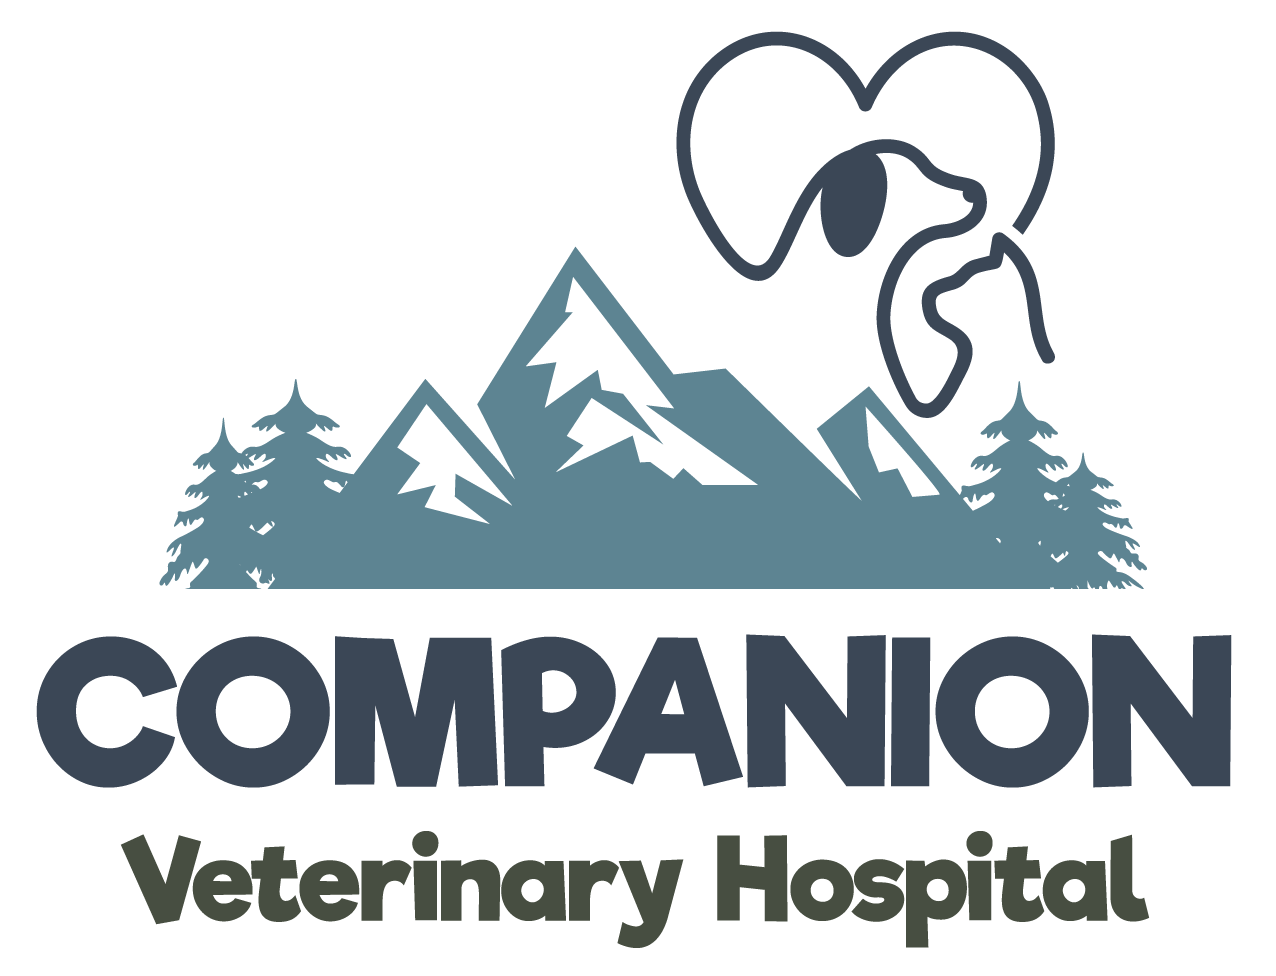 Companion Veterinary Hospital